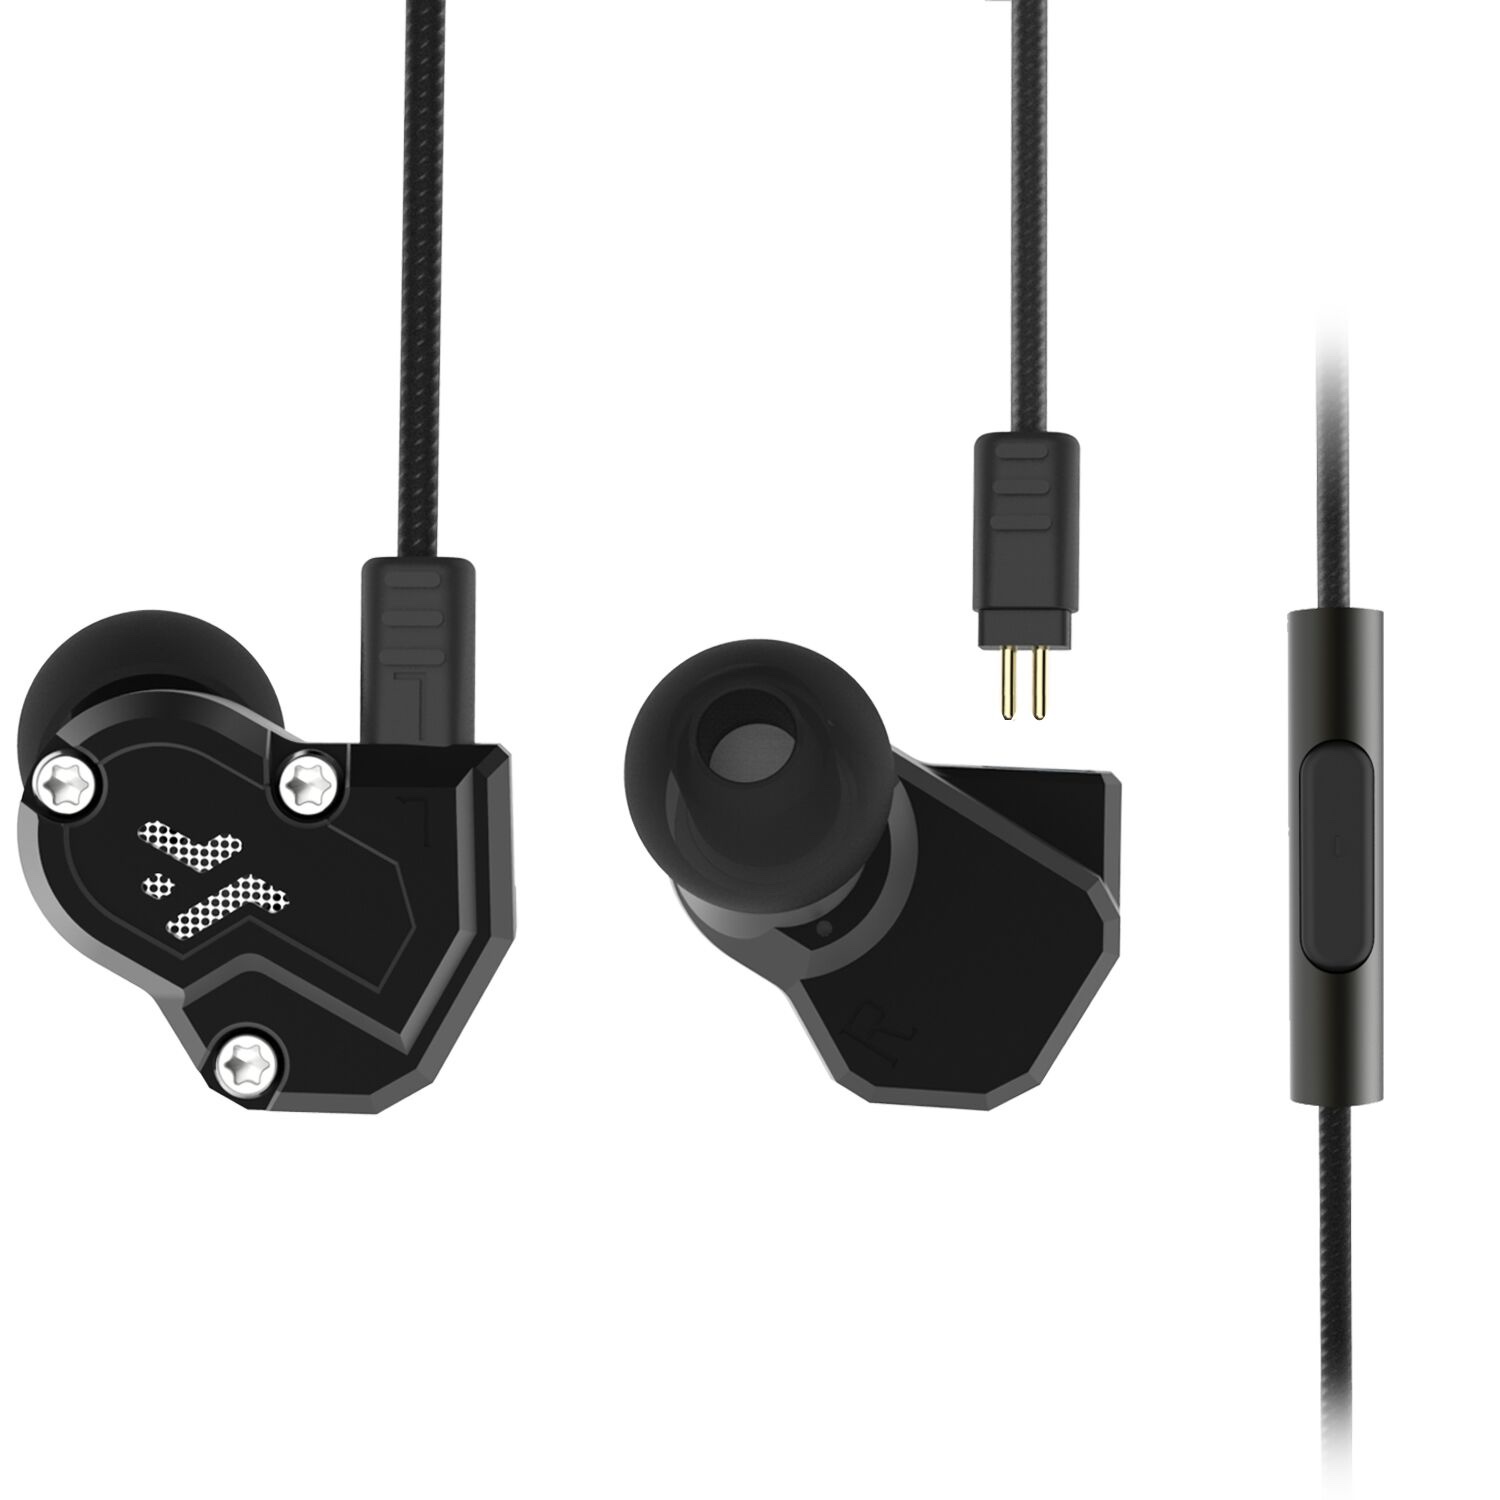 Kool Tools: QT3 quad driver in-ear earphones